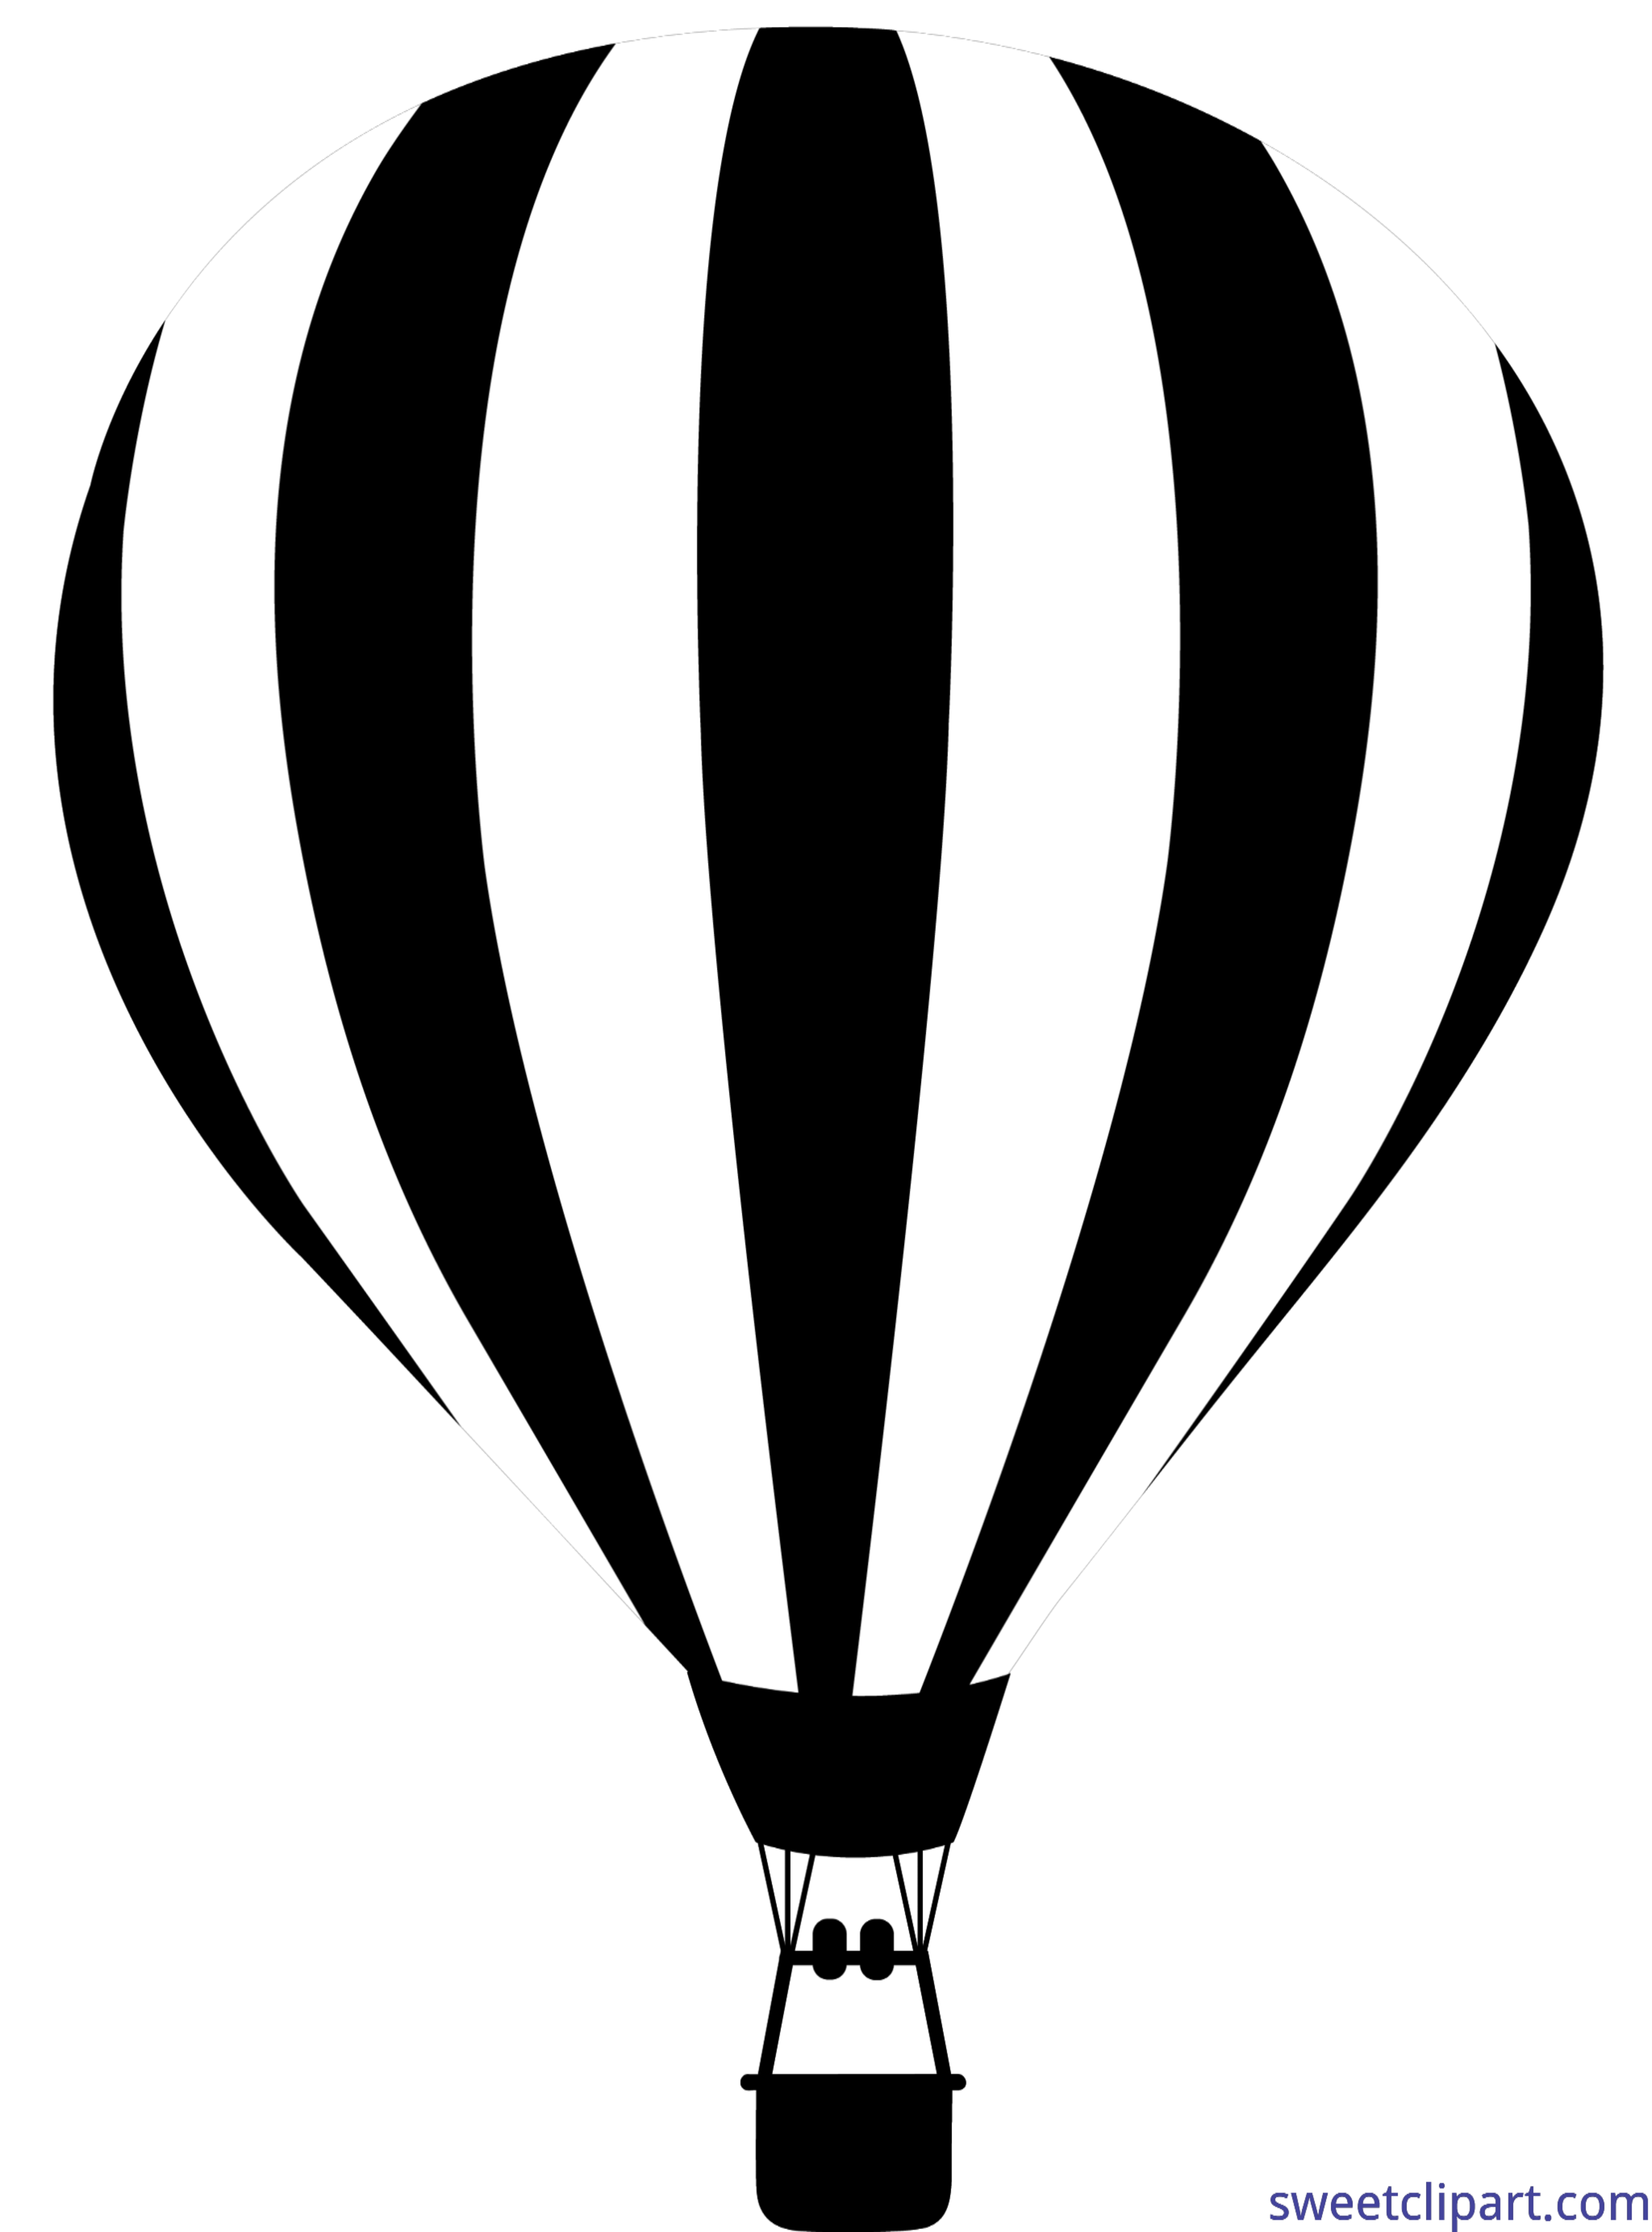 Clipart balloon fish. Hot air silhouette clip